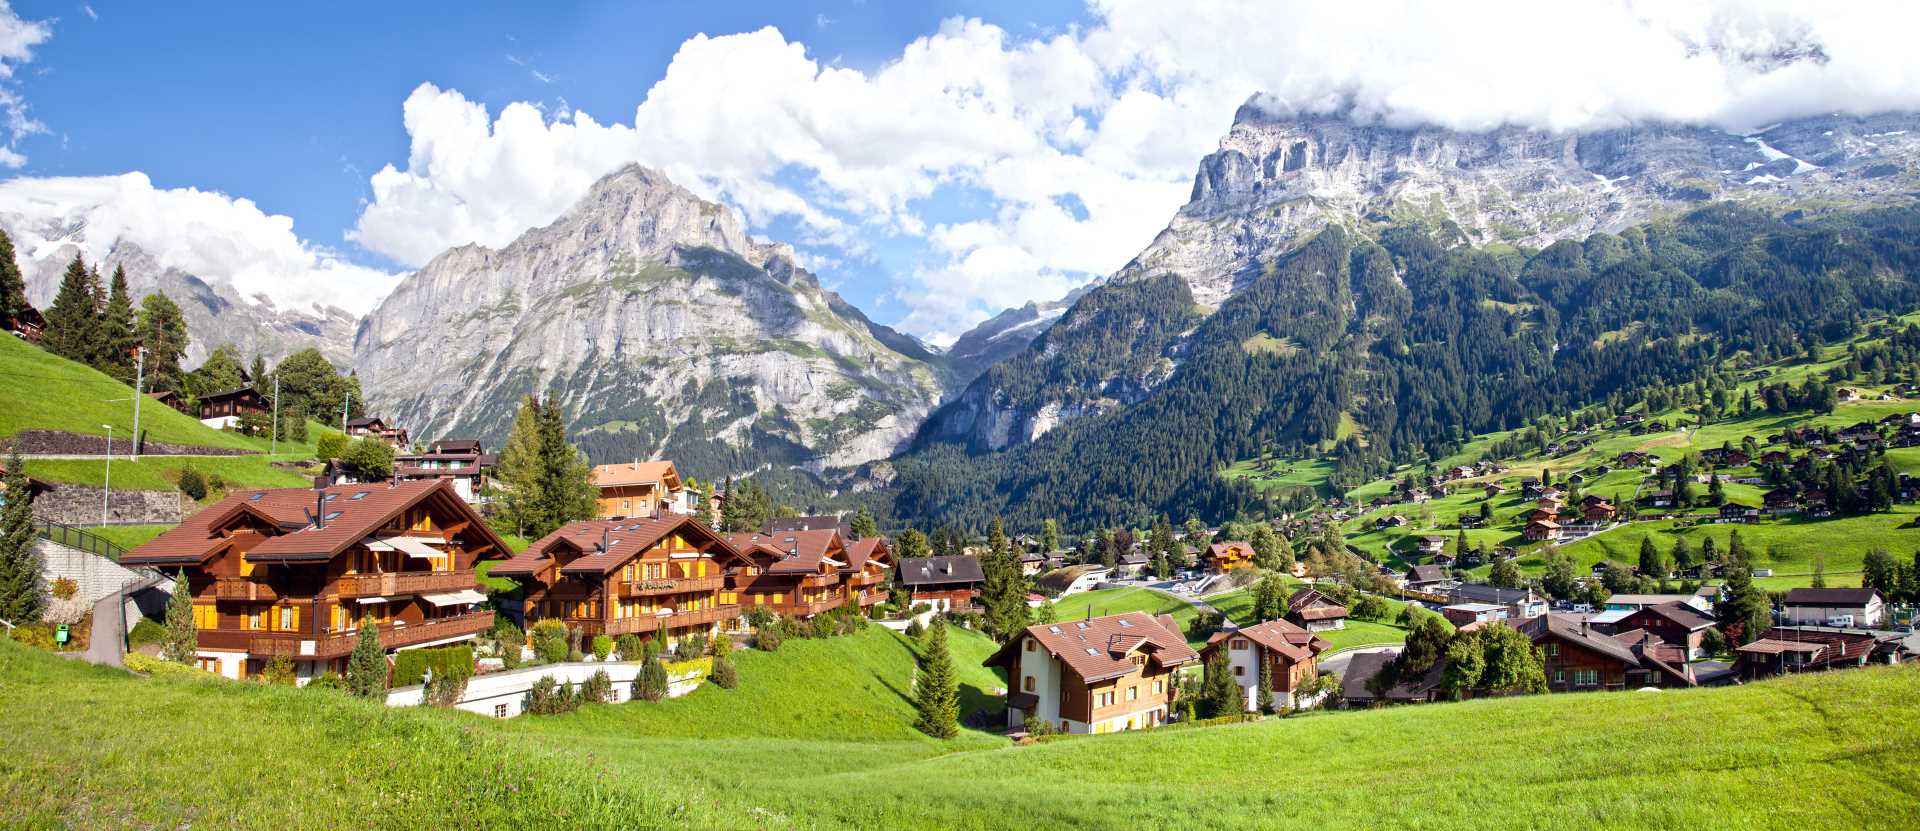 Grindelwald, Interlaken-Oberhasli, Bern, Schweiz - Campingplätze in der Schweiz